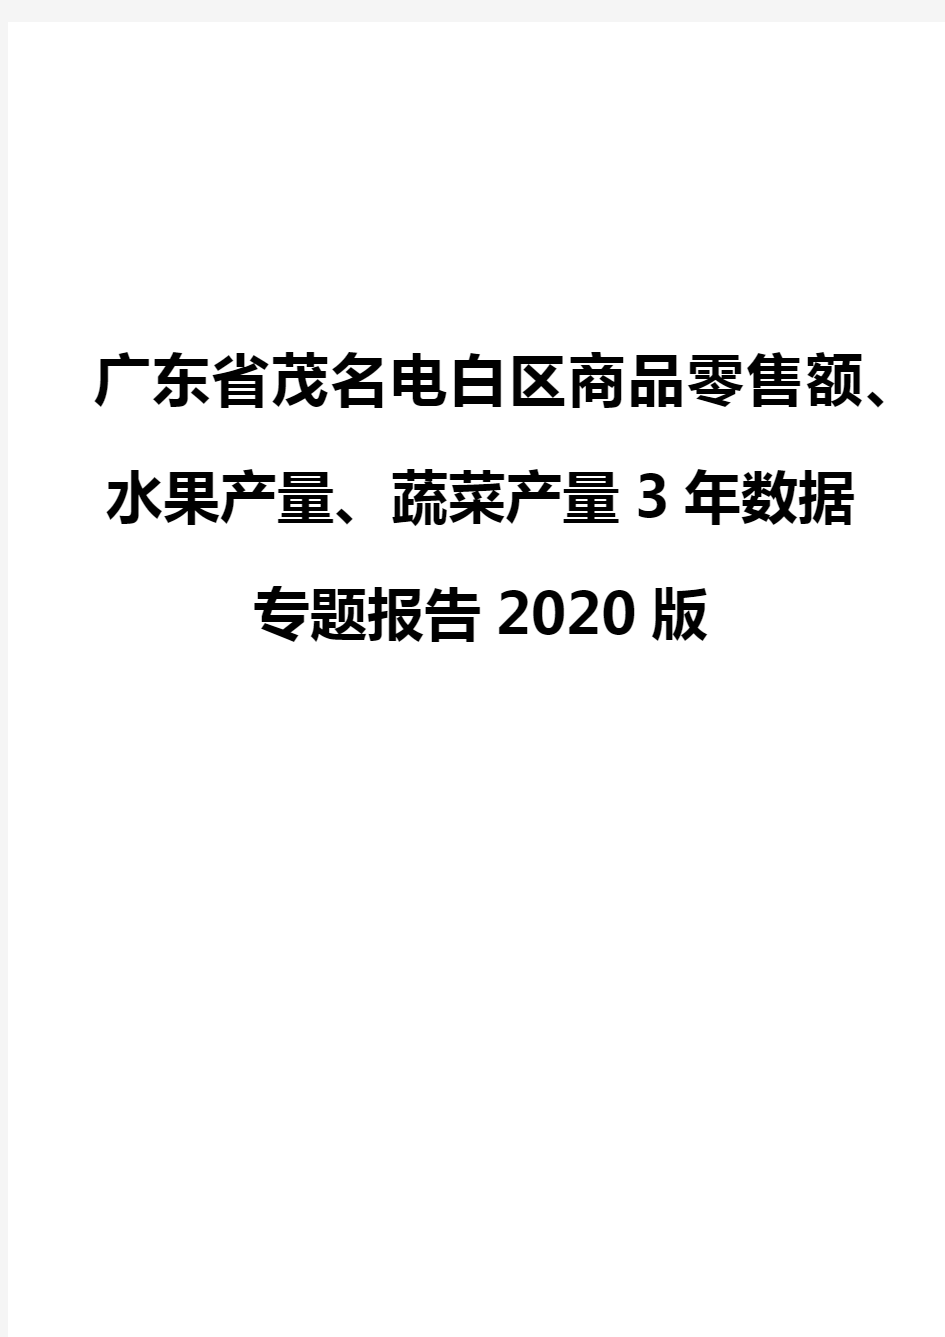 广东省茂名电白区商品零售额、水果产量、蔬菜产量3年数据专题报告2020版